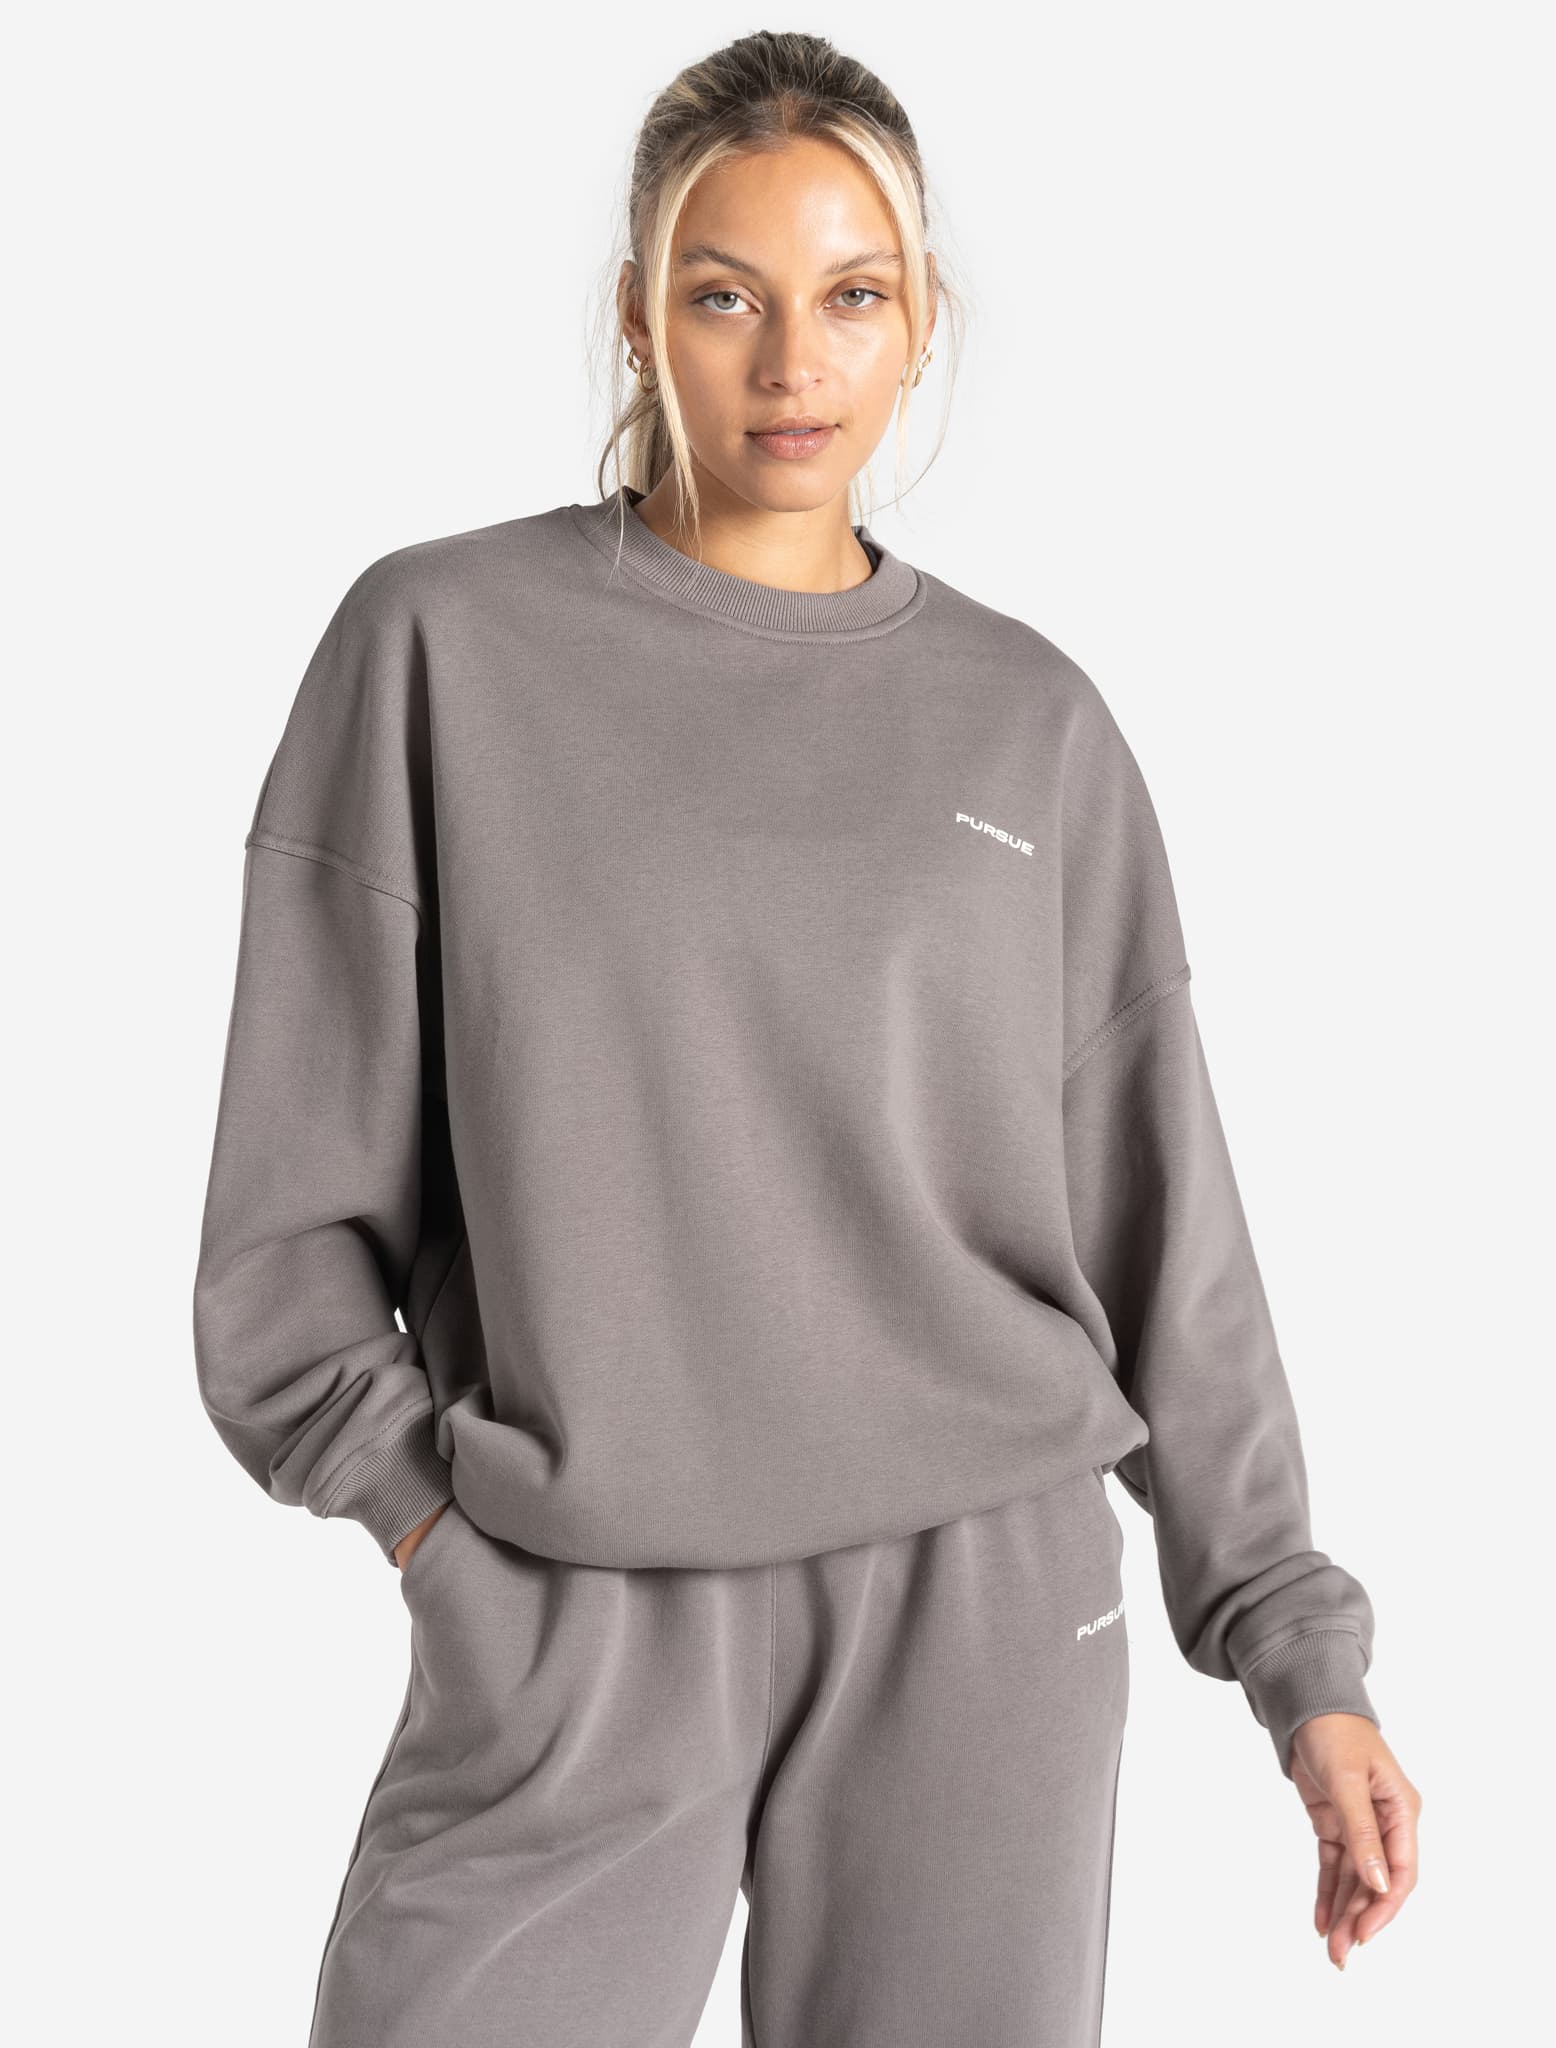 Oversized Sweatshirt / Mushroom Grey Pursue Fitness 1